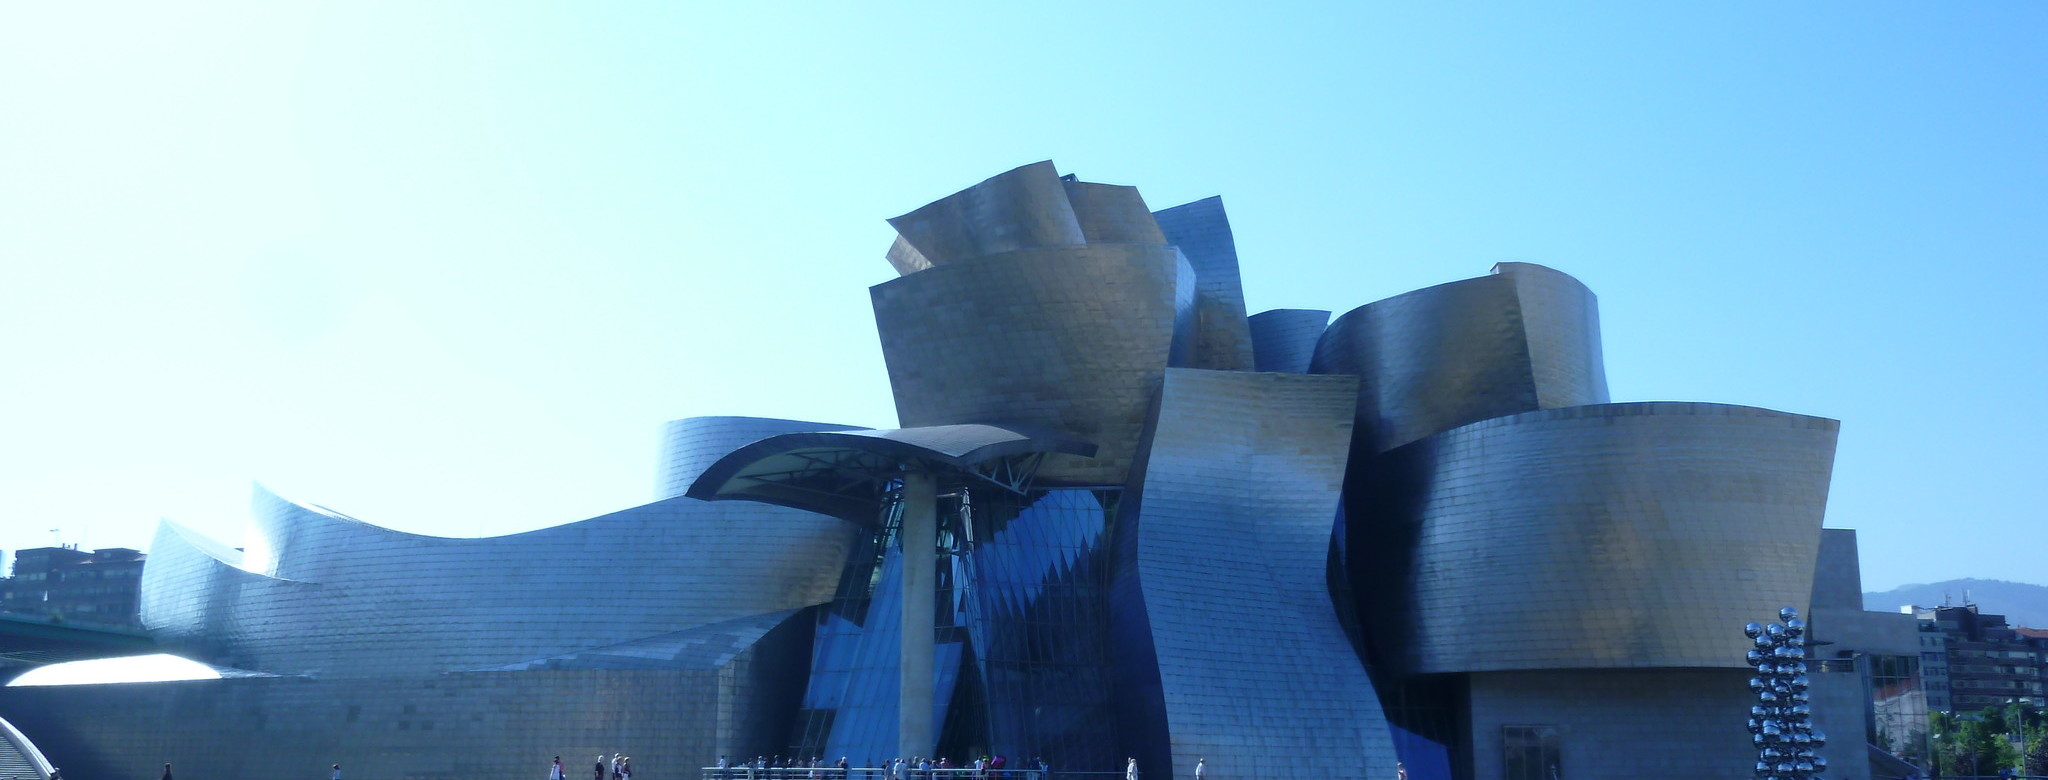 Bilbao: Guggenheim-Museum